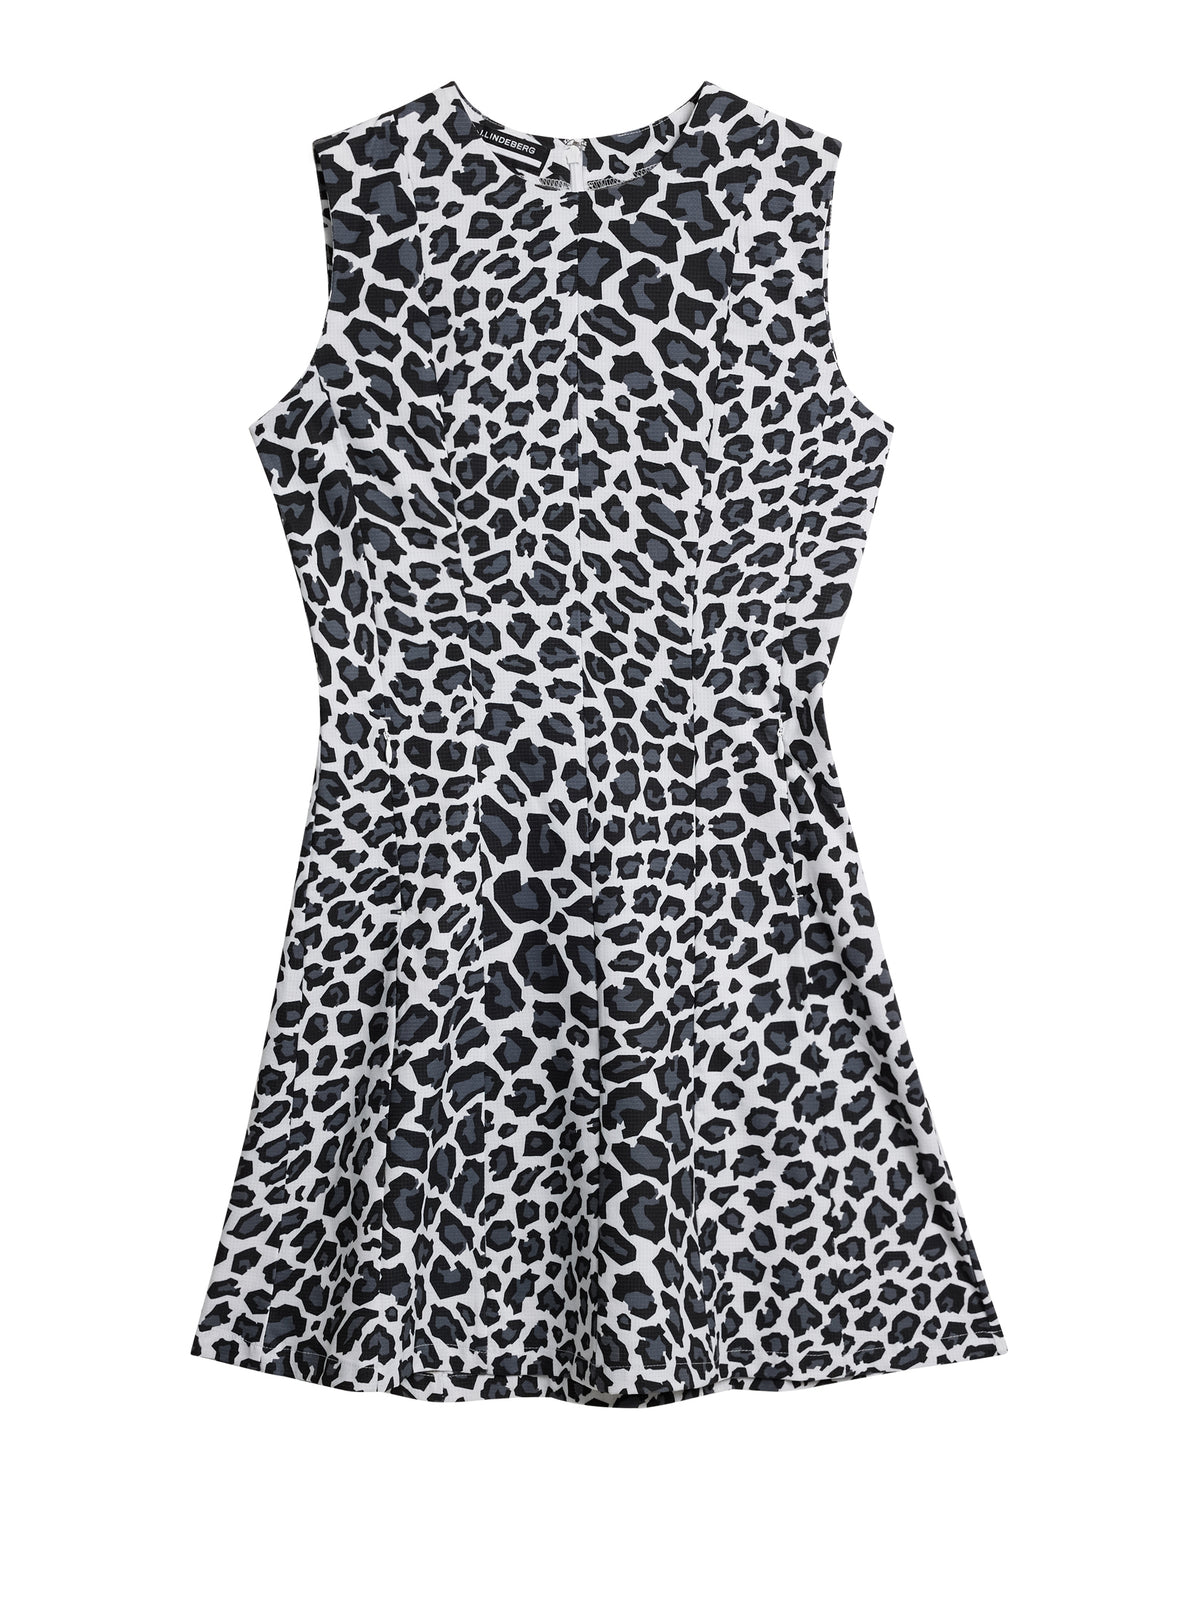 Gabriella Printed Dress / BW Leopard